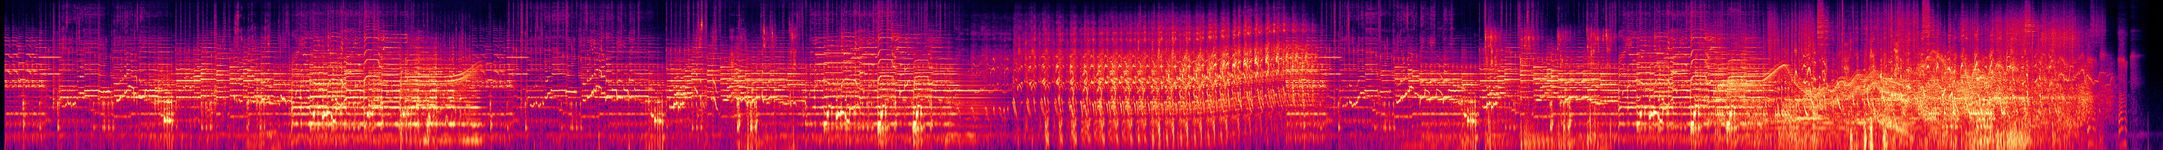 My Game of Loving - Spectrogram.jpg